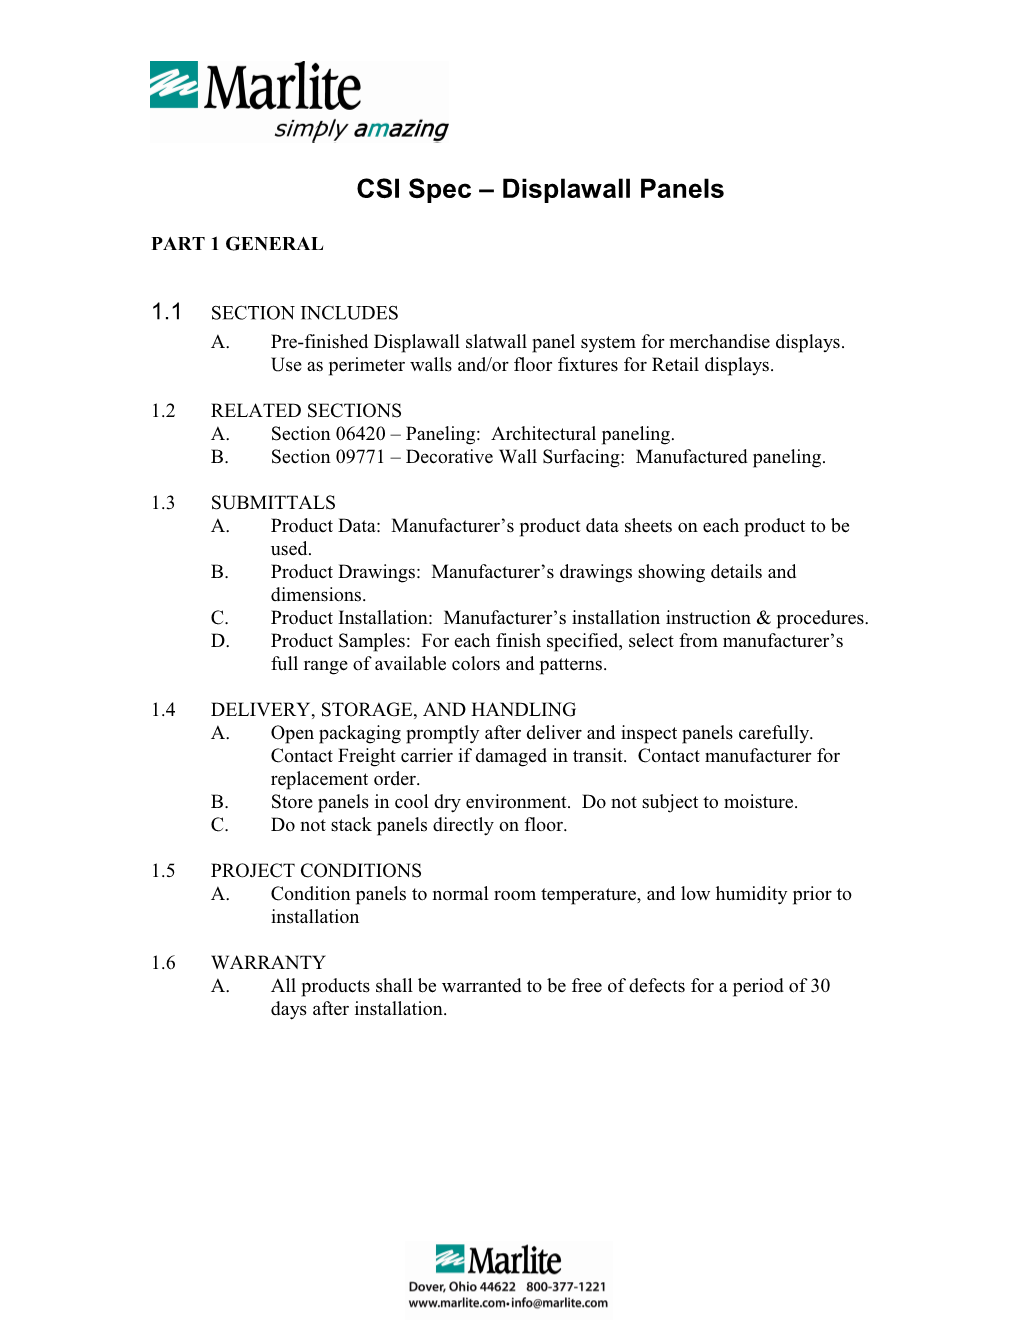 CSI Spec Displawall Panels